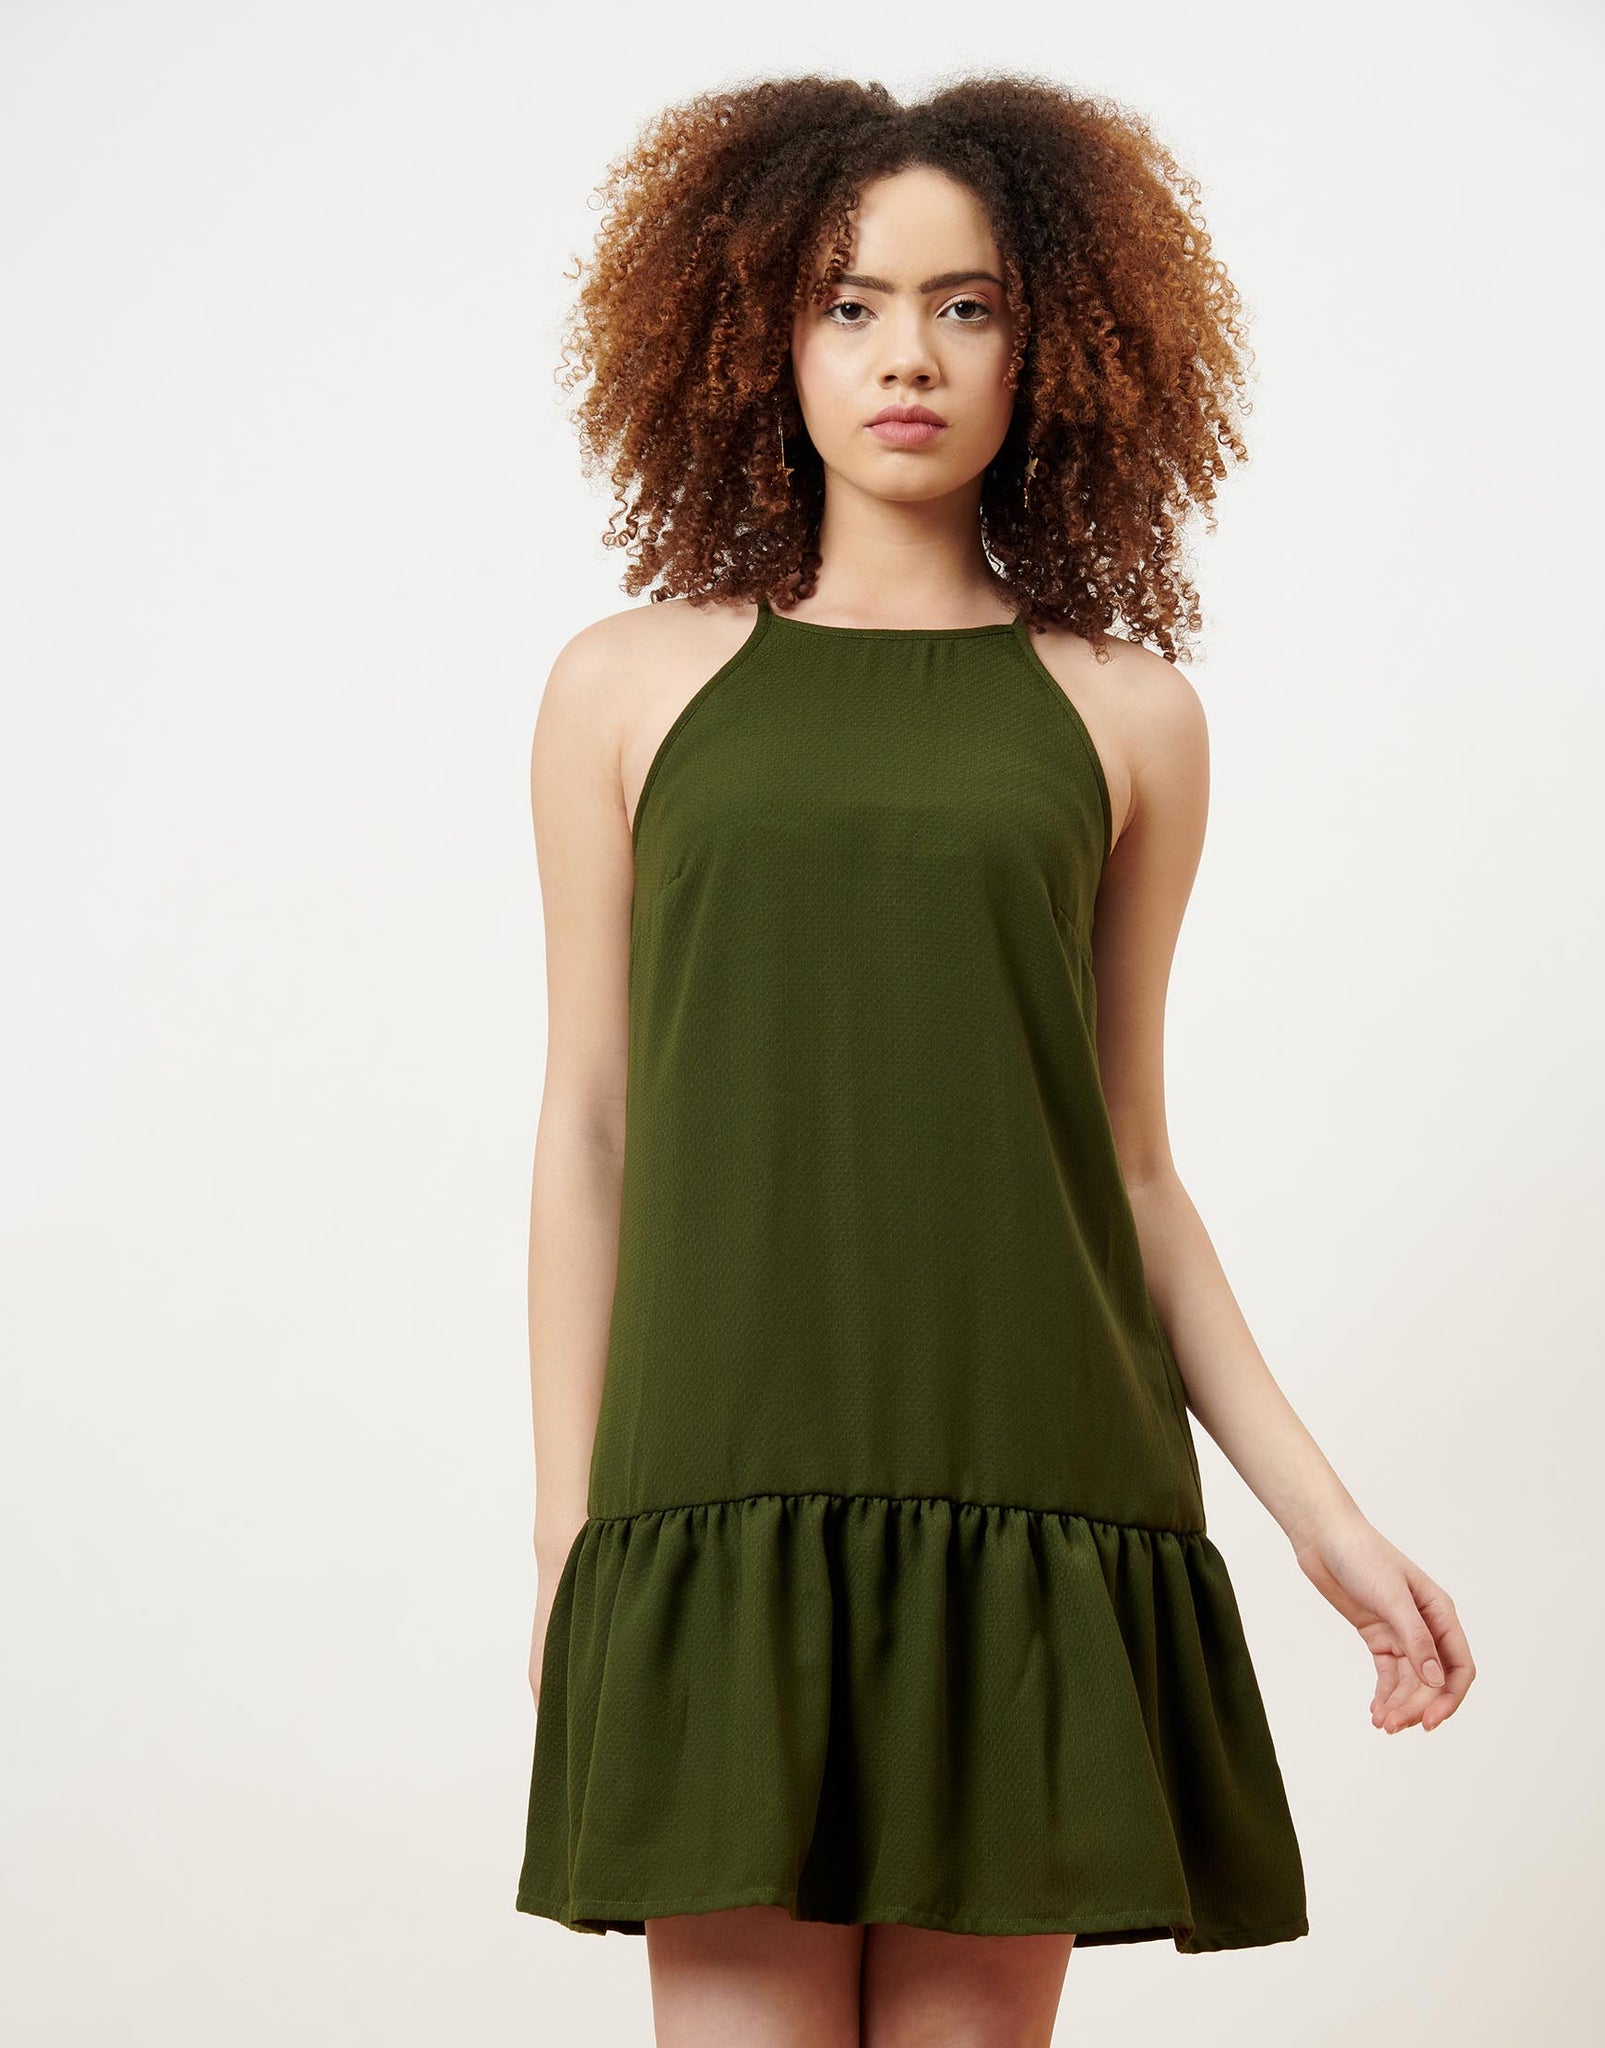 Self fabric Olive Green Shift Dress